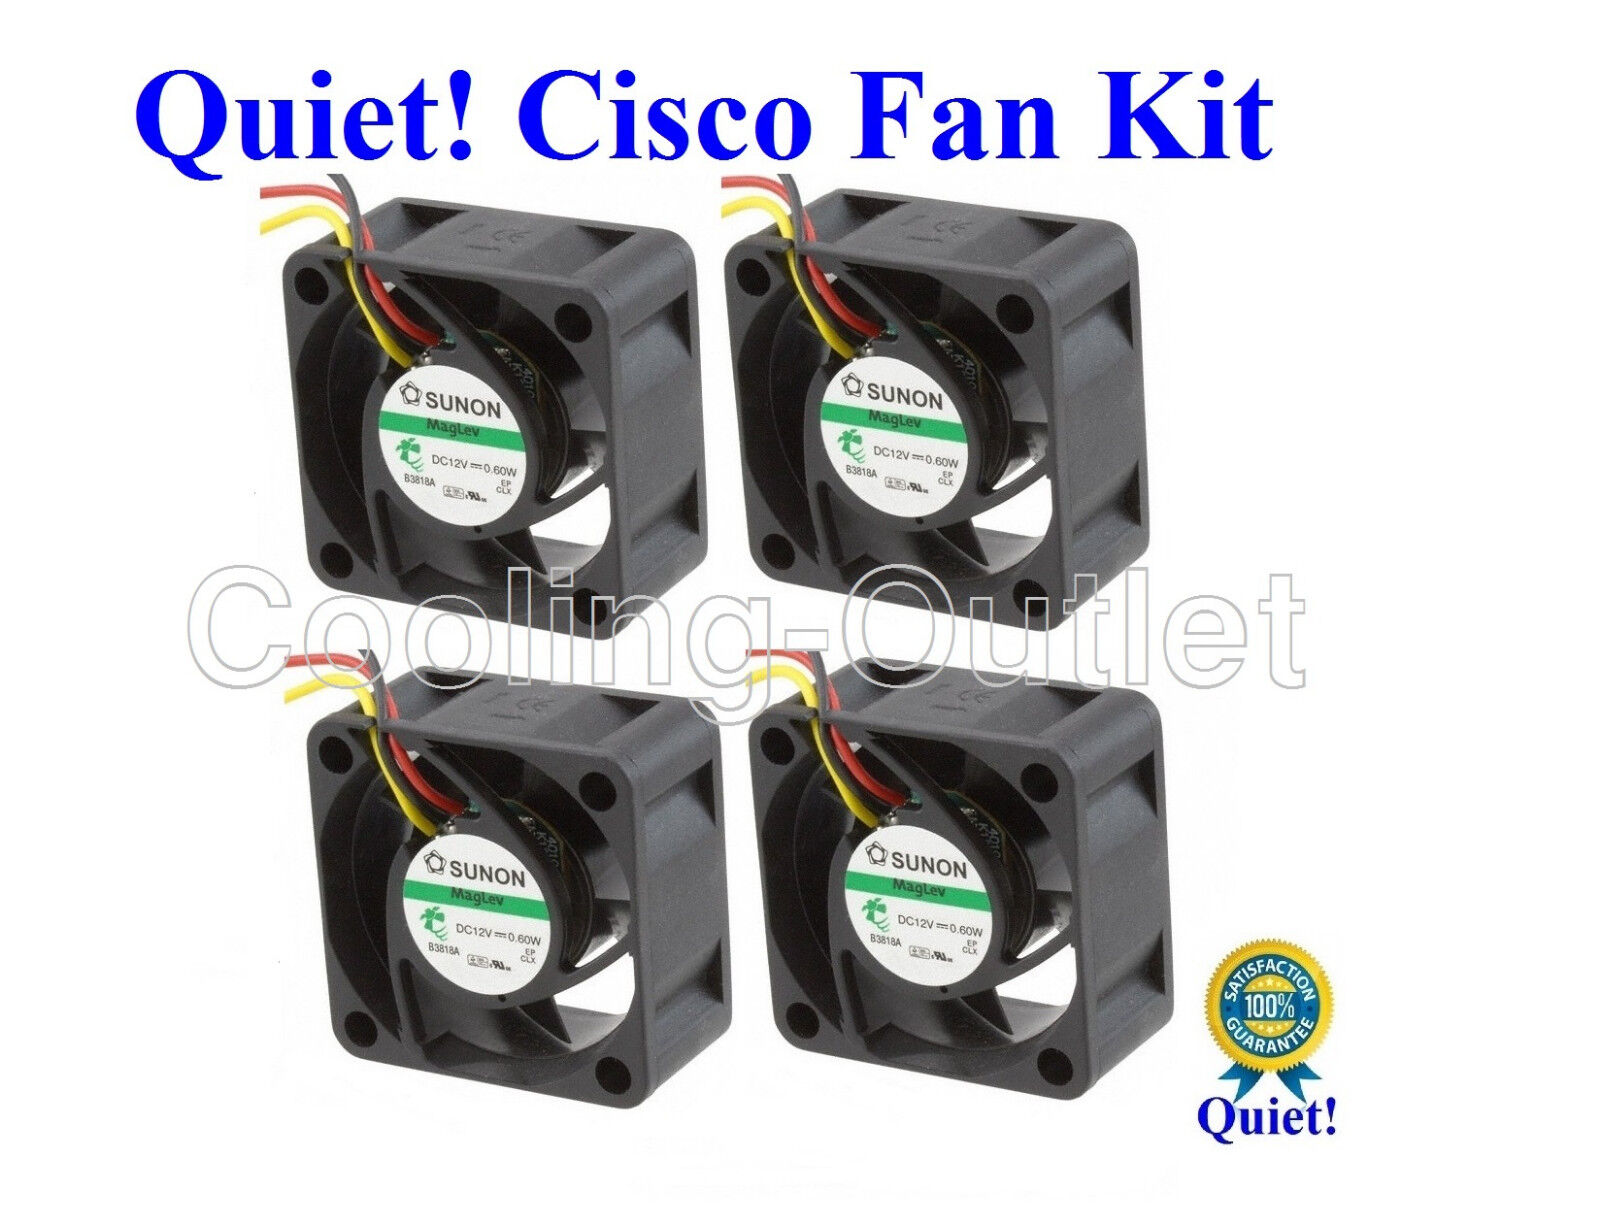 Set of 4x Quiet fans for Cisco SG300-52P SG300-52MP Low Noise 18dBA Sunon fan